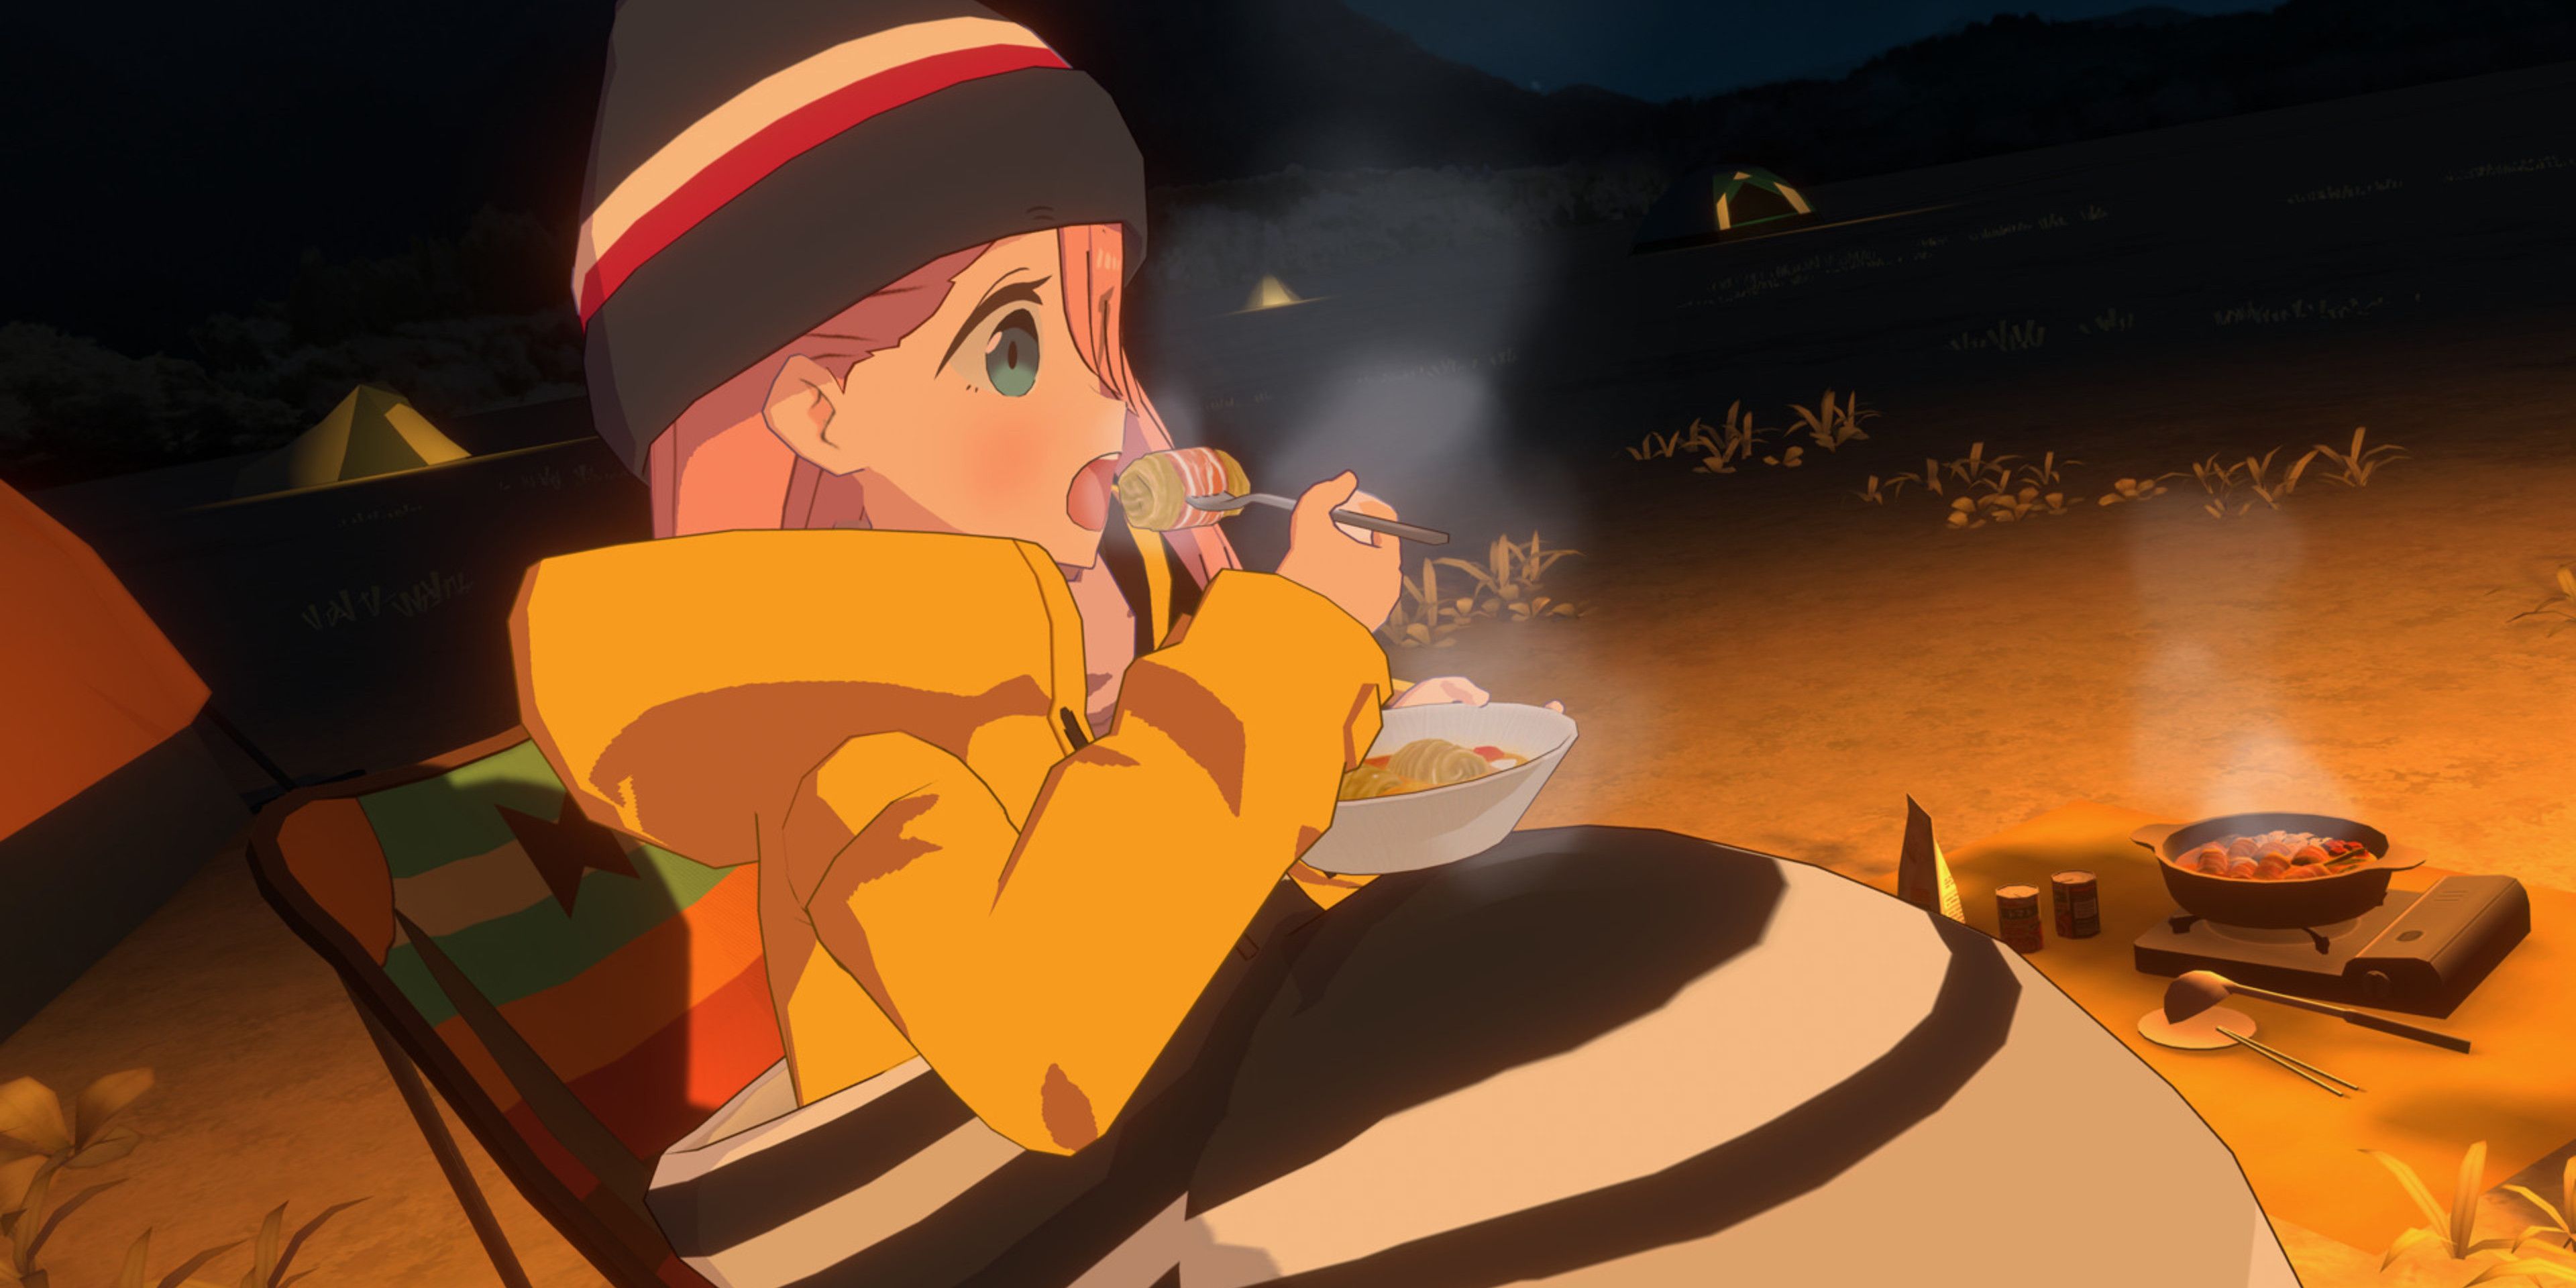 Player watching Nadeshiko eat camp food at night